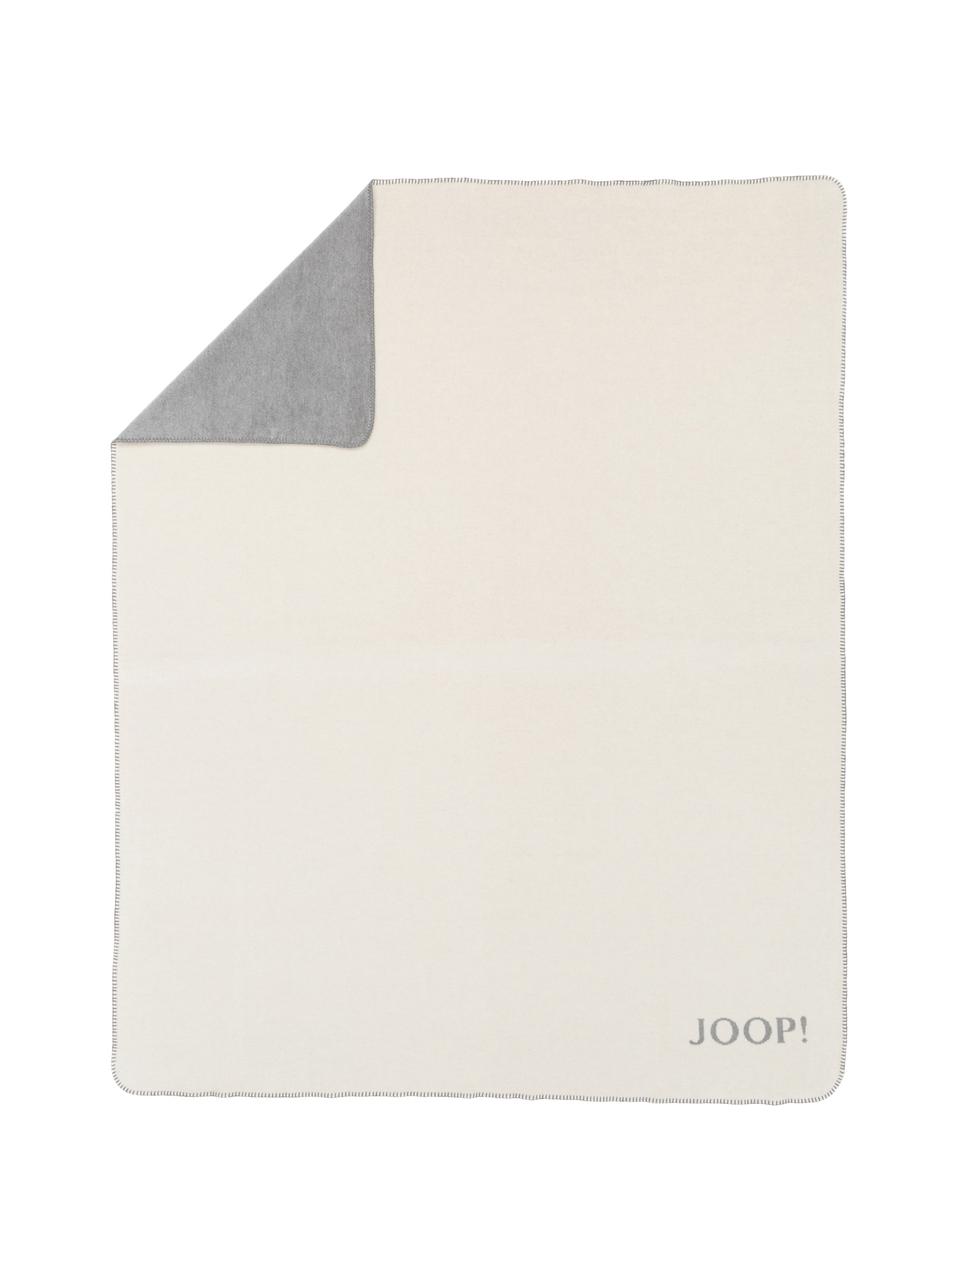 Dubbelzijdige fleece plaid Melange Doubleface in gebroken wit en grijs, 58% katoen, 35% polyacryl, 7% polyester, Gebroken wit, grijs, 150 x 200 cm